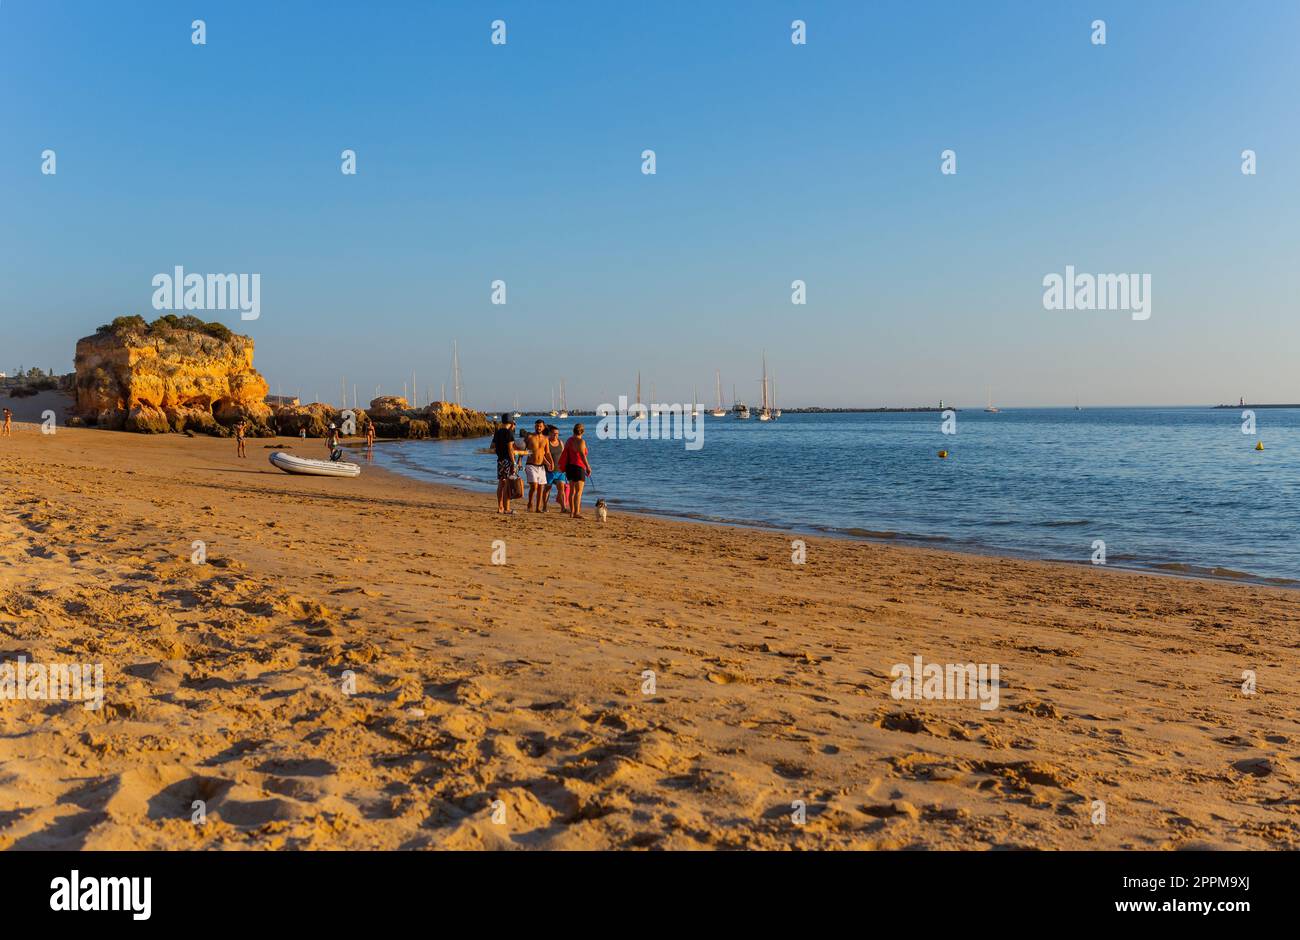 Praia Grande beach. Ferragudo Stock Photo - Alamy